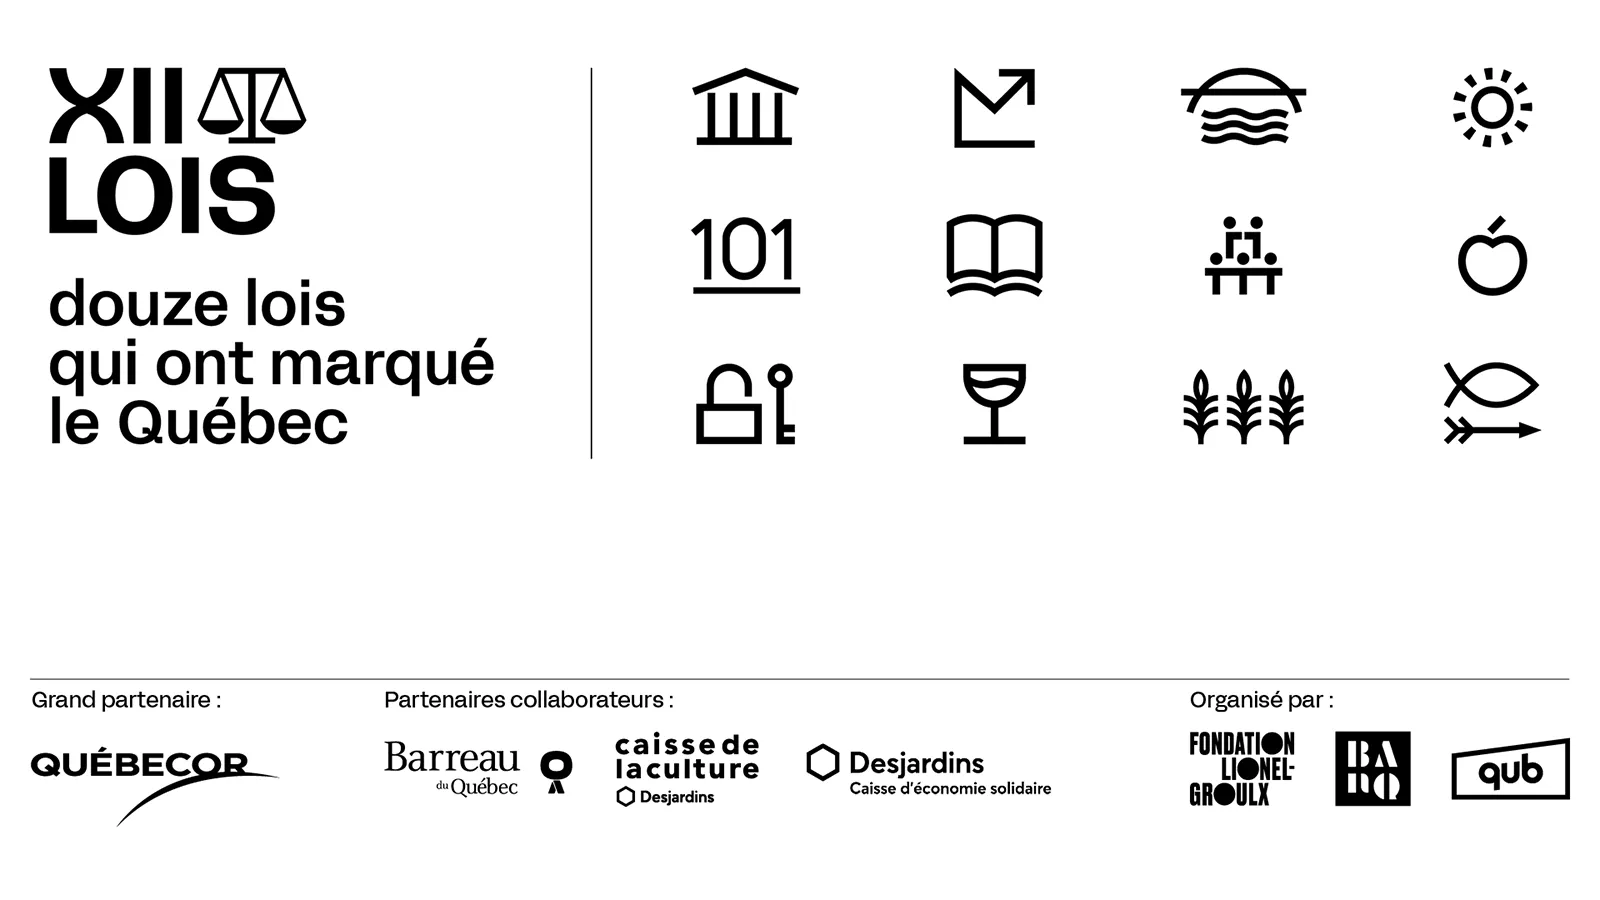 Douze lois qui ont marqué le Québec - Icônes de conférences et logos des partenaires